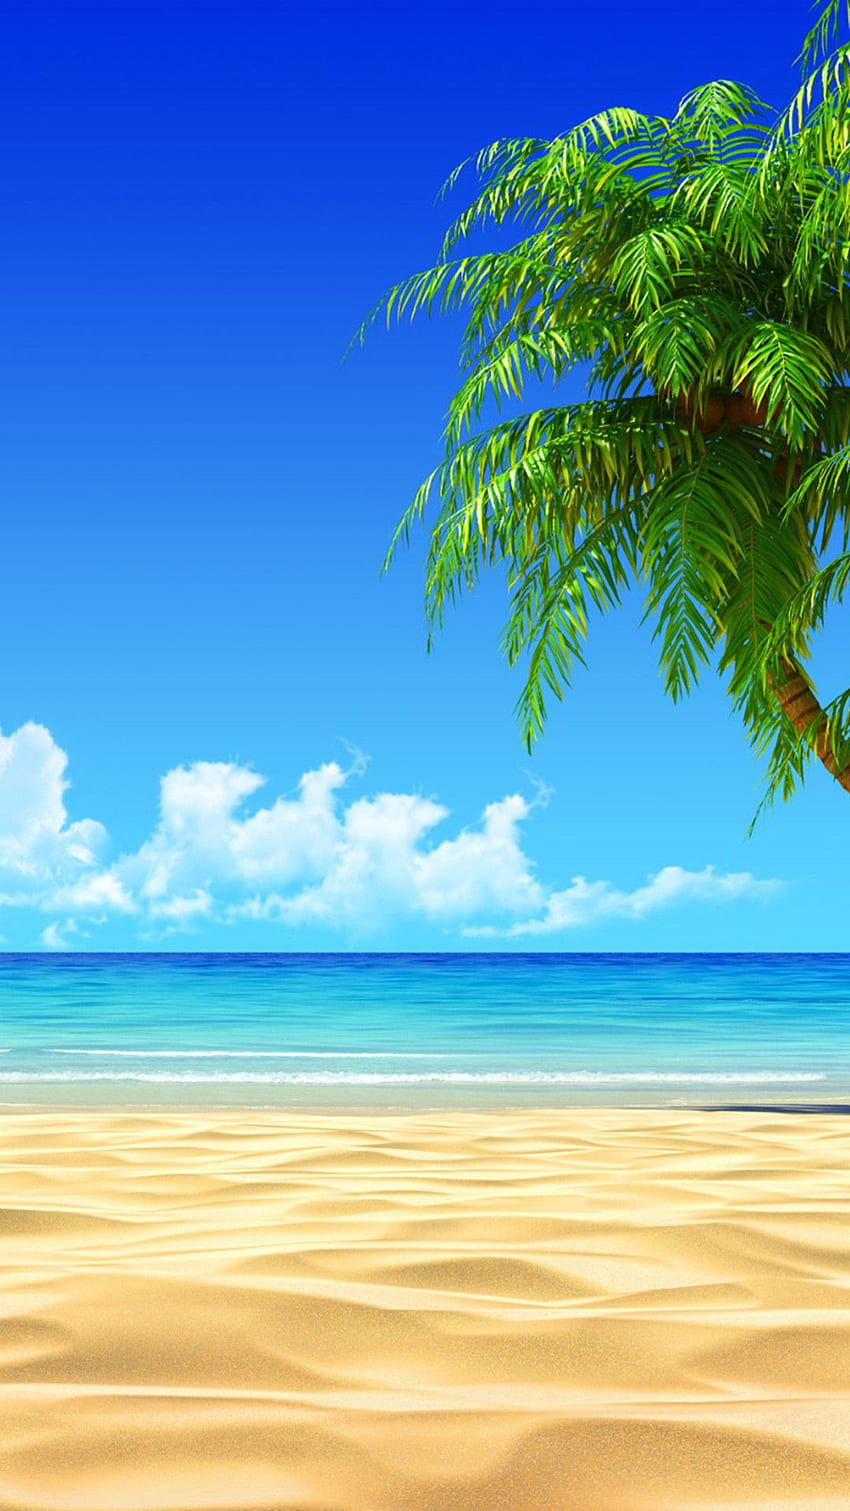 Rumah Pantai Di Pulau Tropis - Pantai iPhone wallpaper ponsel HD